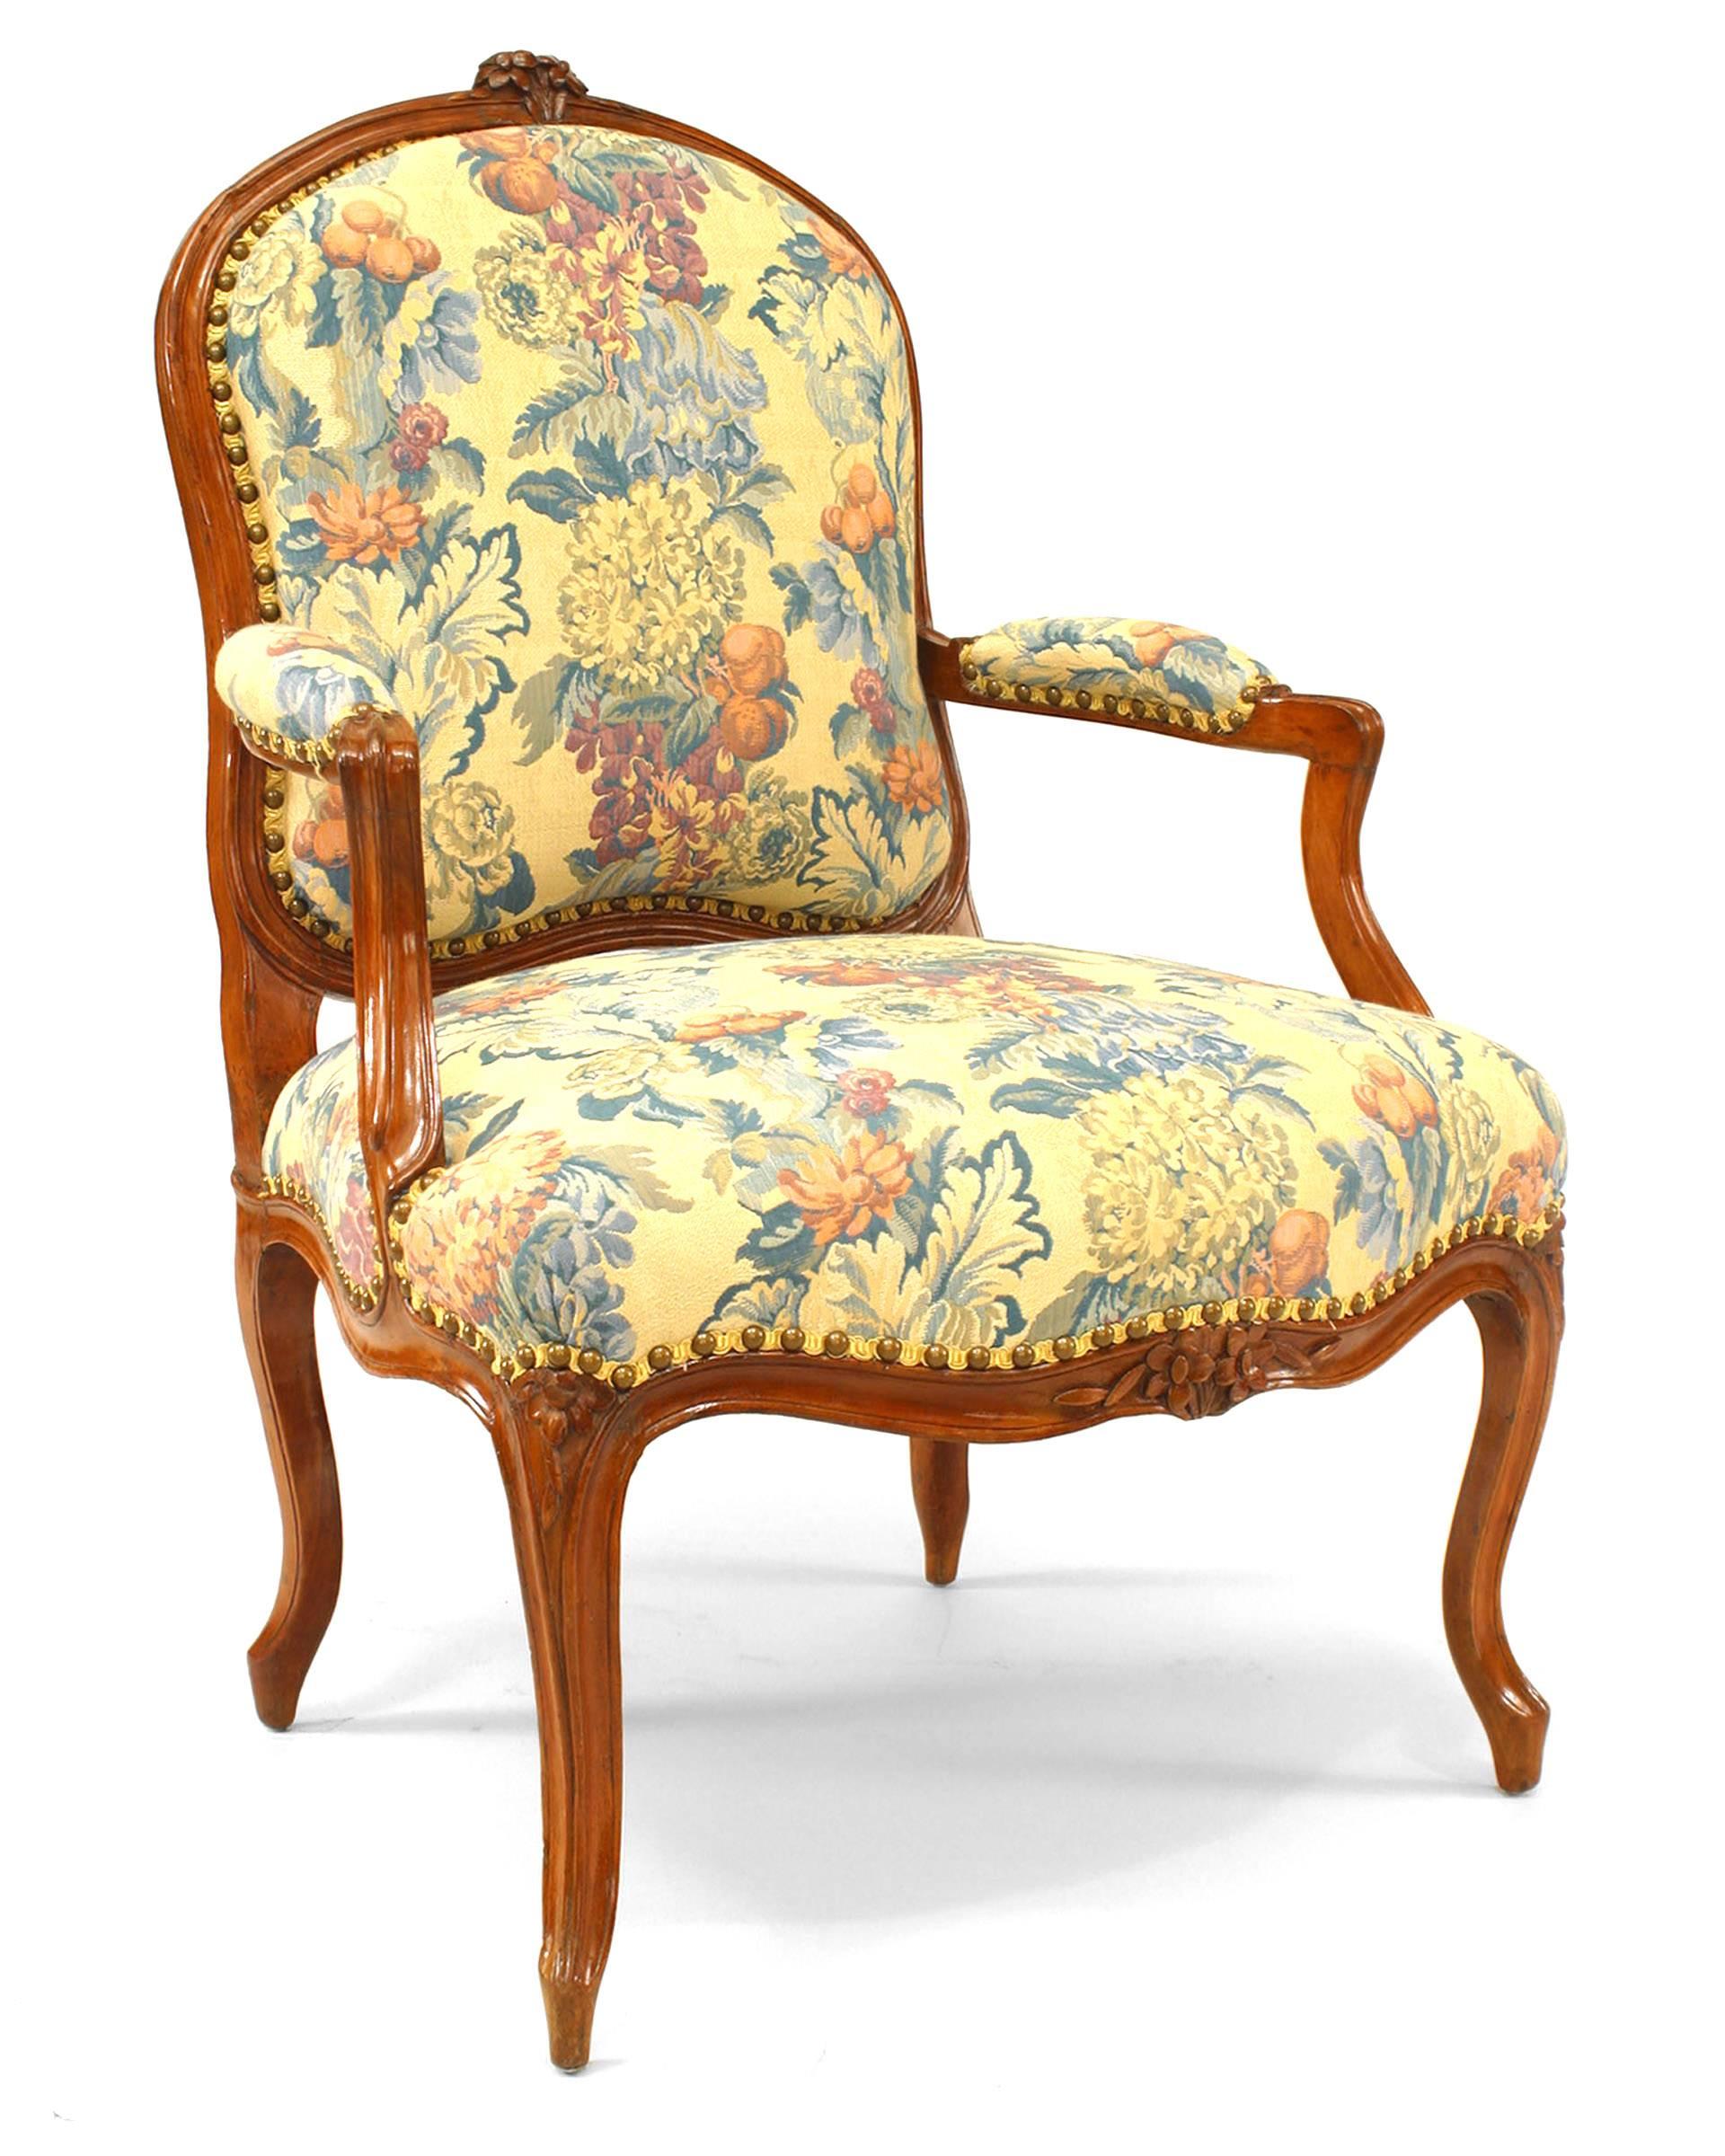 Paire de fauteuils ouverts de style provincial français Louis XV avec crête florale sculptée sur le haut du cadre du dossier et assise, dossier et accoudoirs tapissés de fleurs
